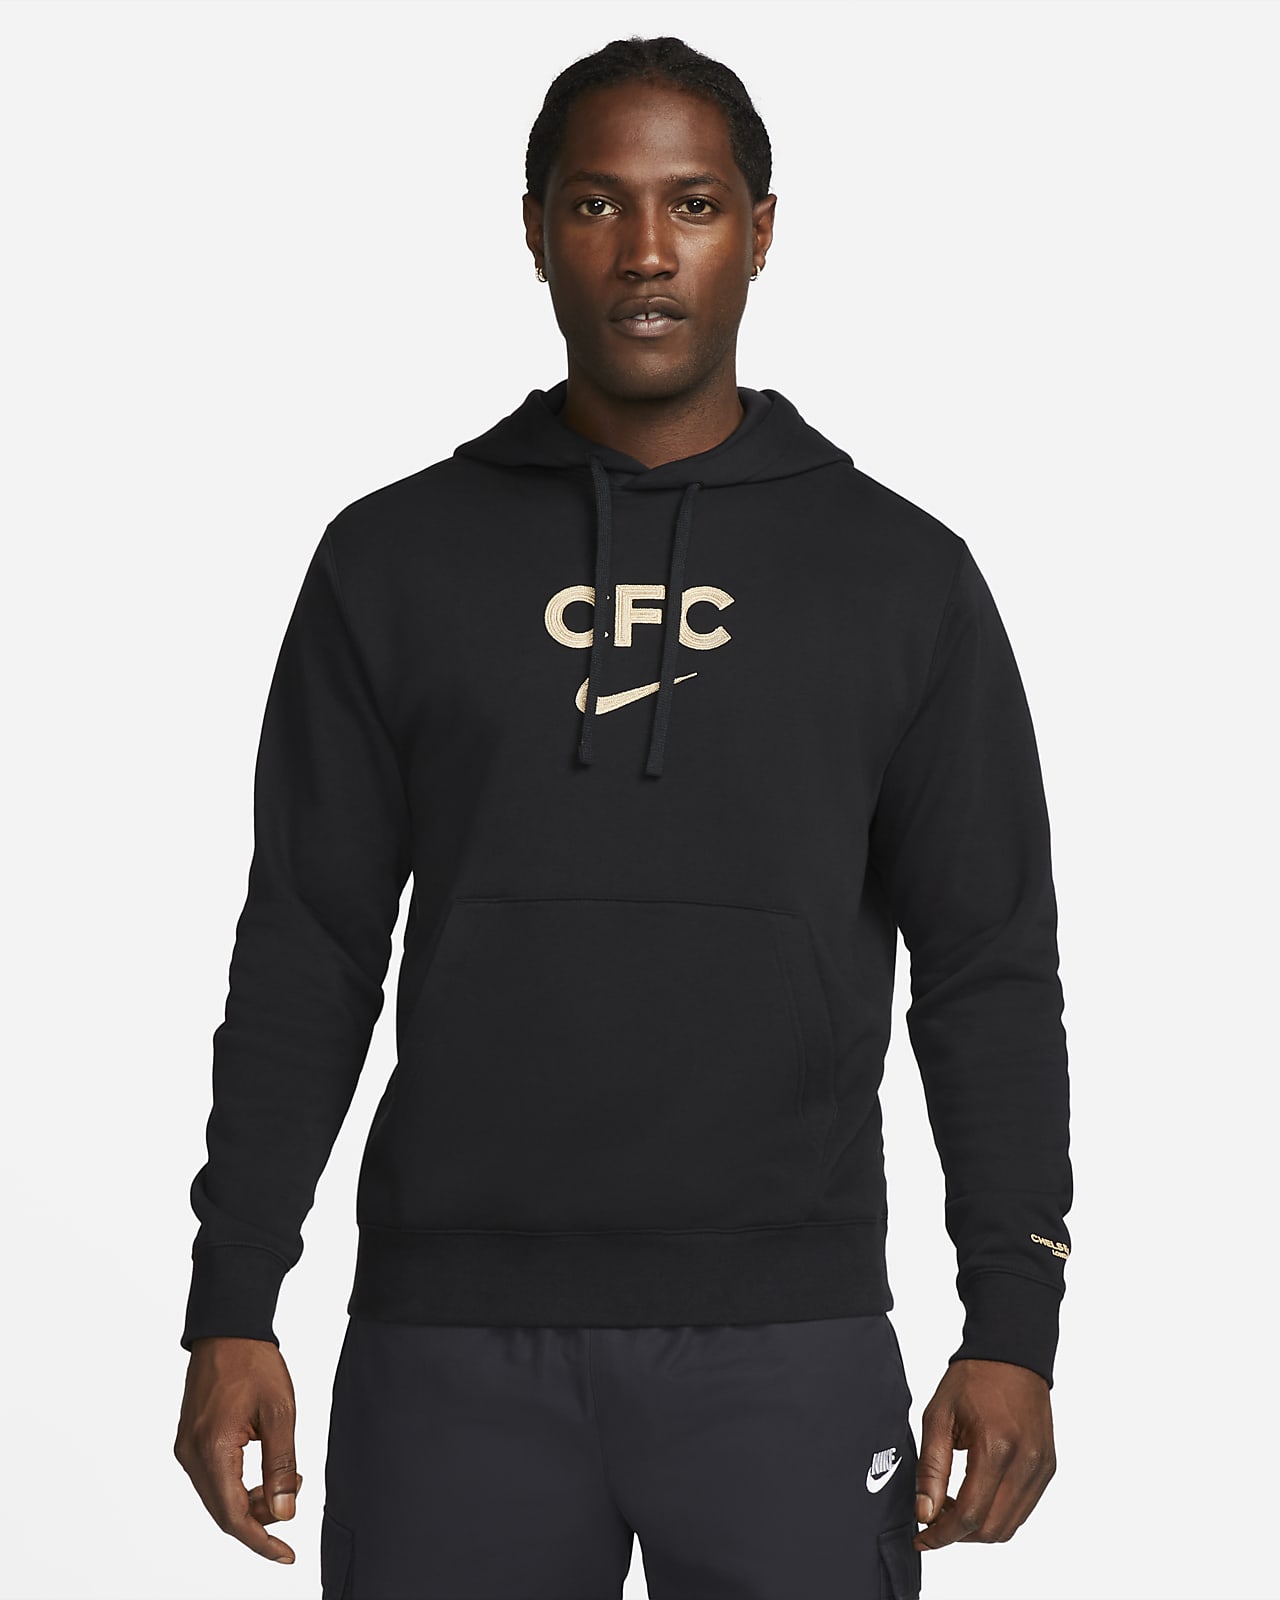 F.C. Fleece Men's Pullover Hoodie. Nike